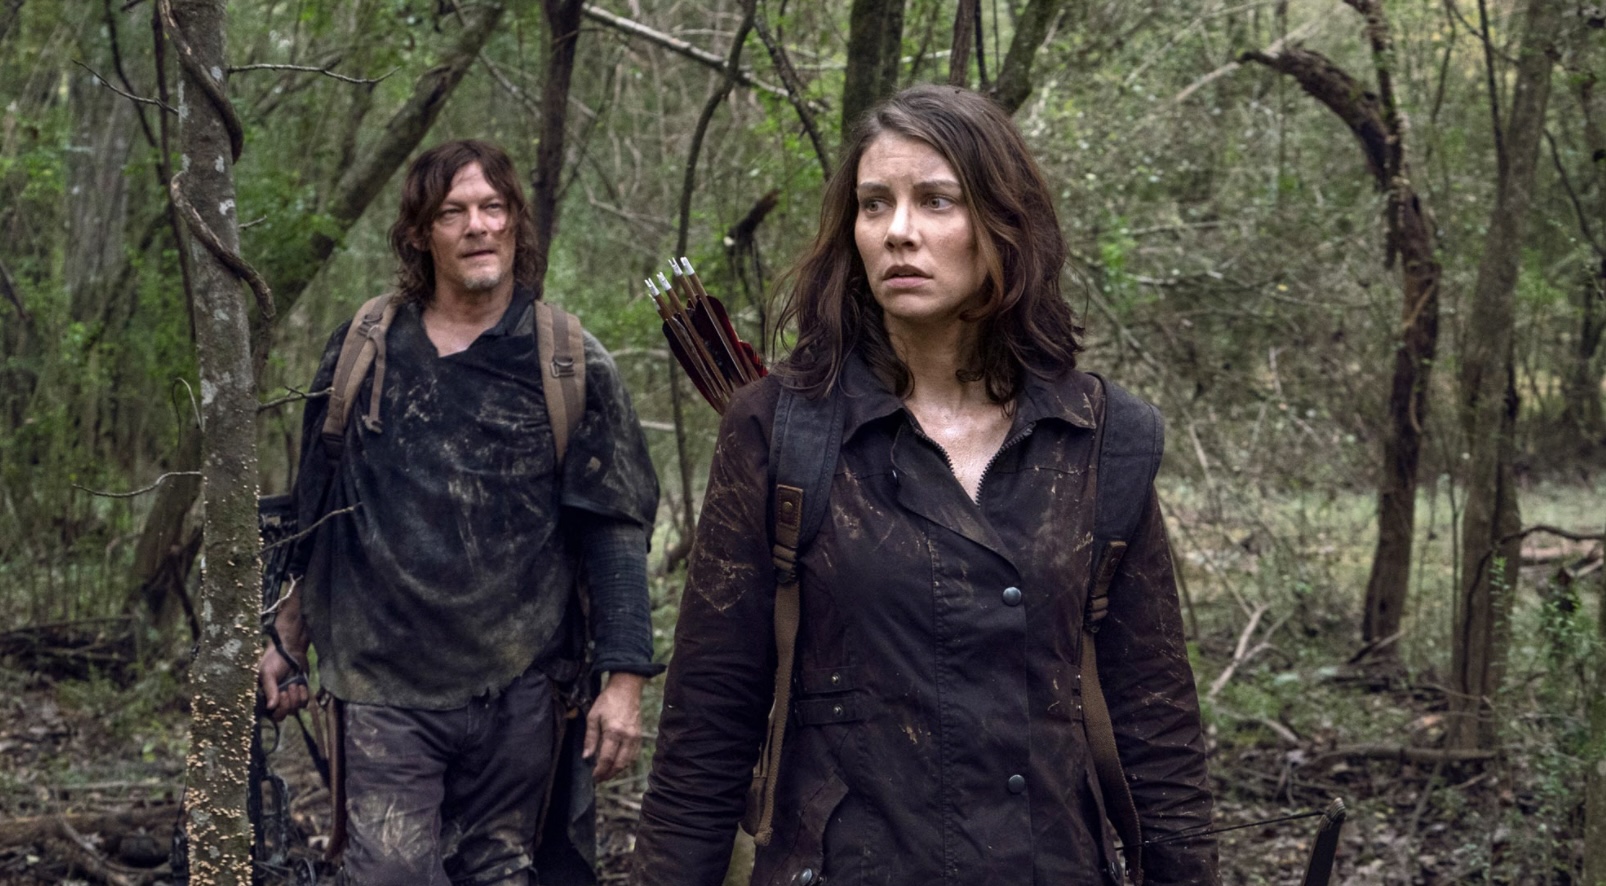 Walking Dead Season 11 Episode 2 Release Date